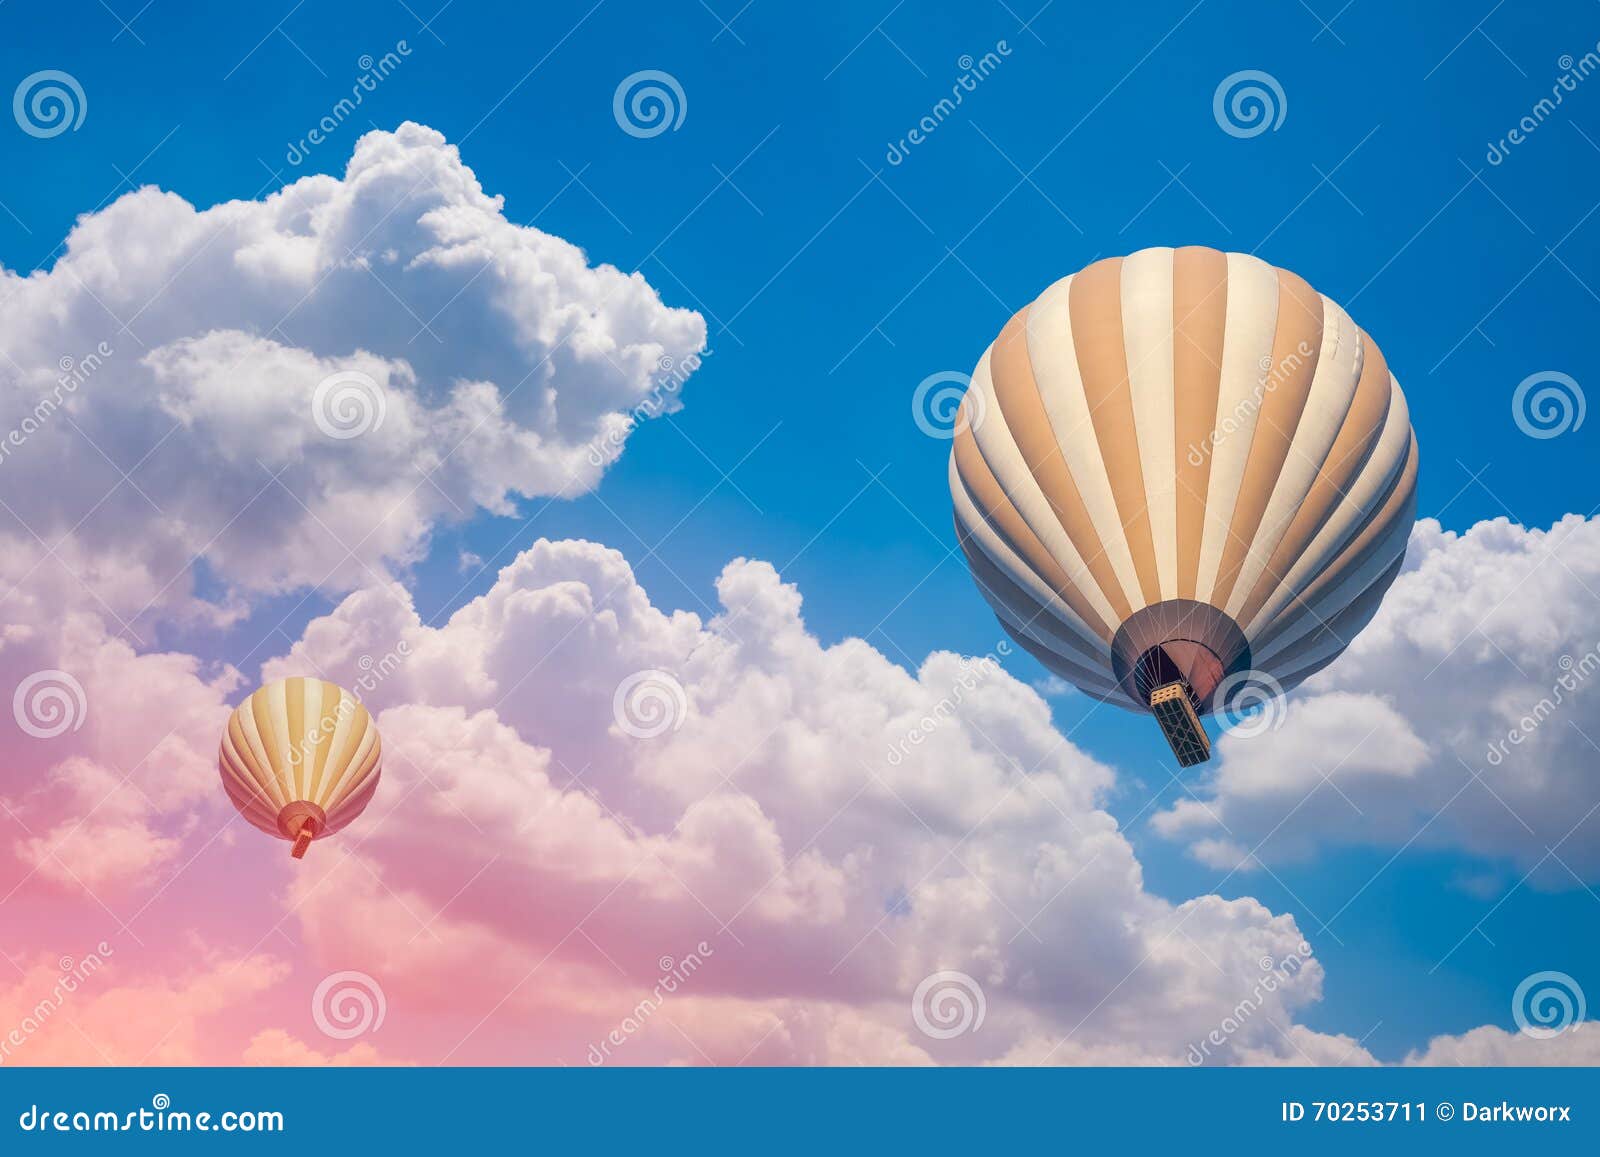 Dois balões de ar quente com fundo nebuloso do céu azul. Dois balões de ar quente coloridos com fundo nebuloso do céu azul